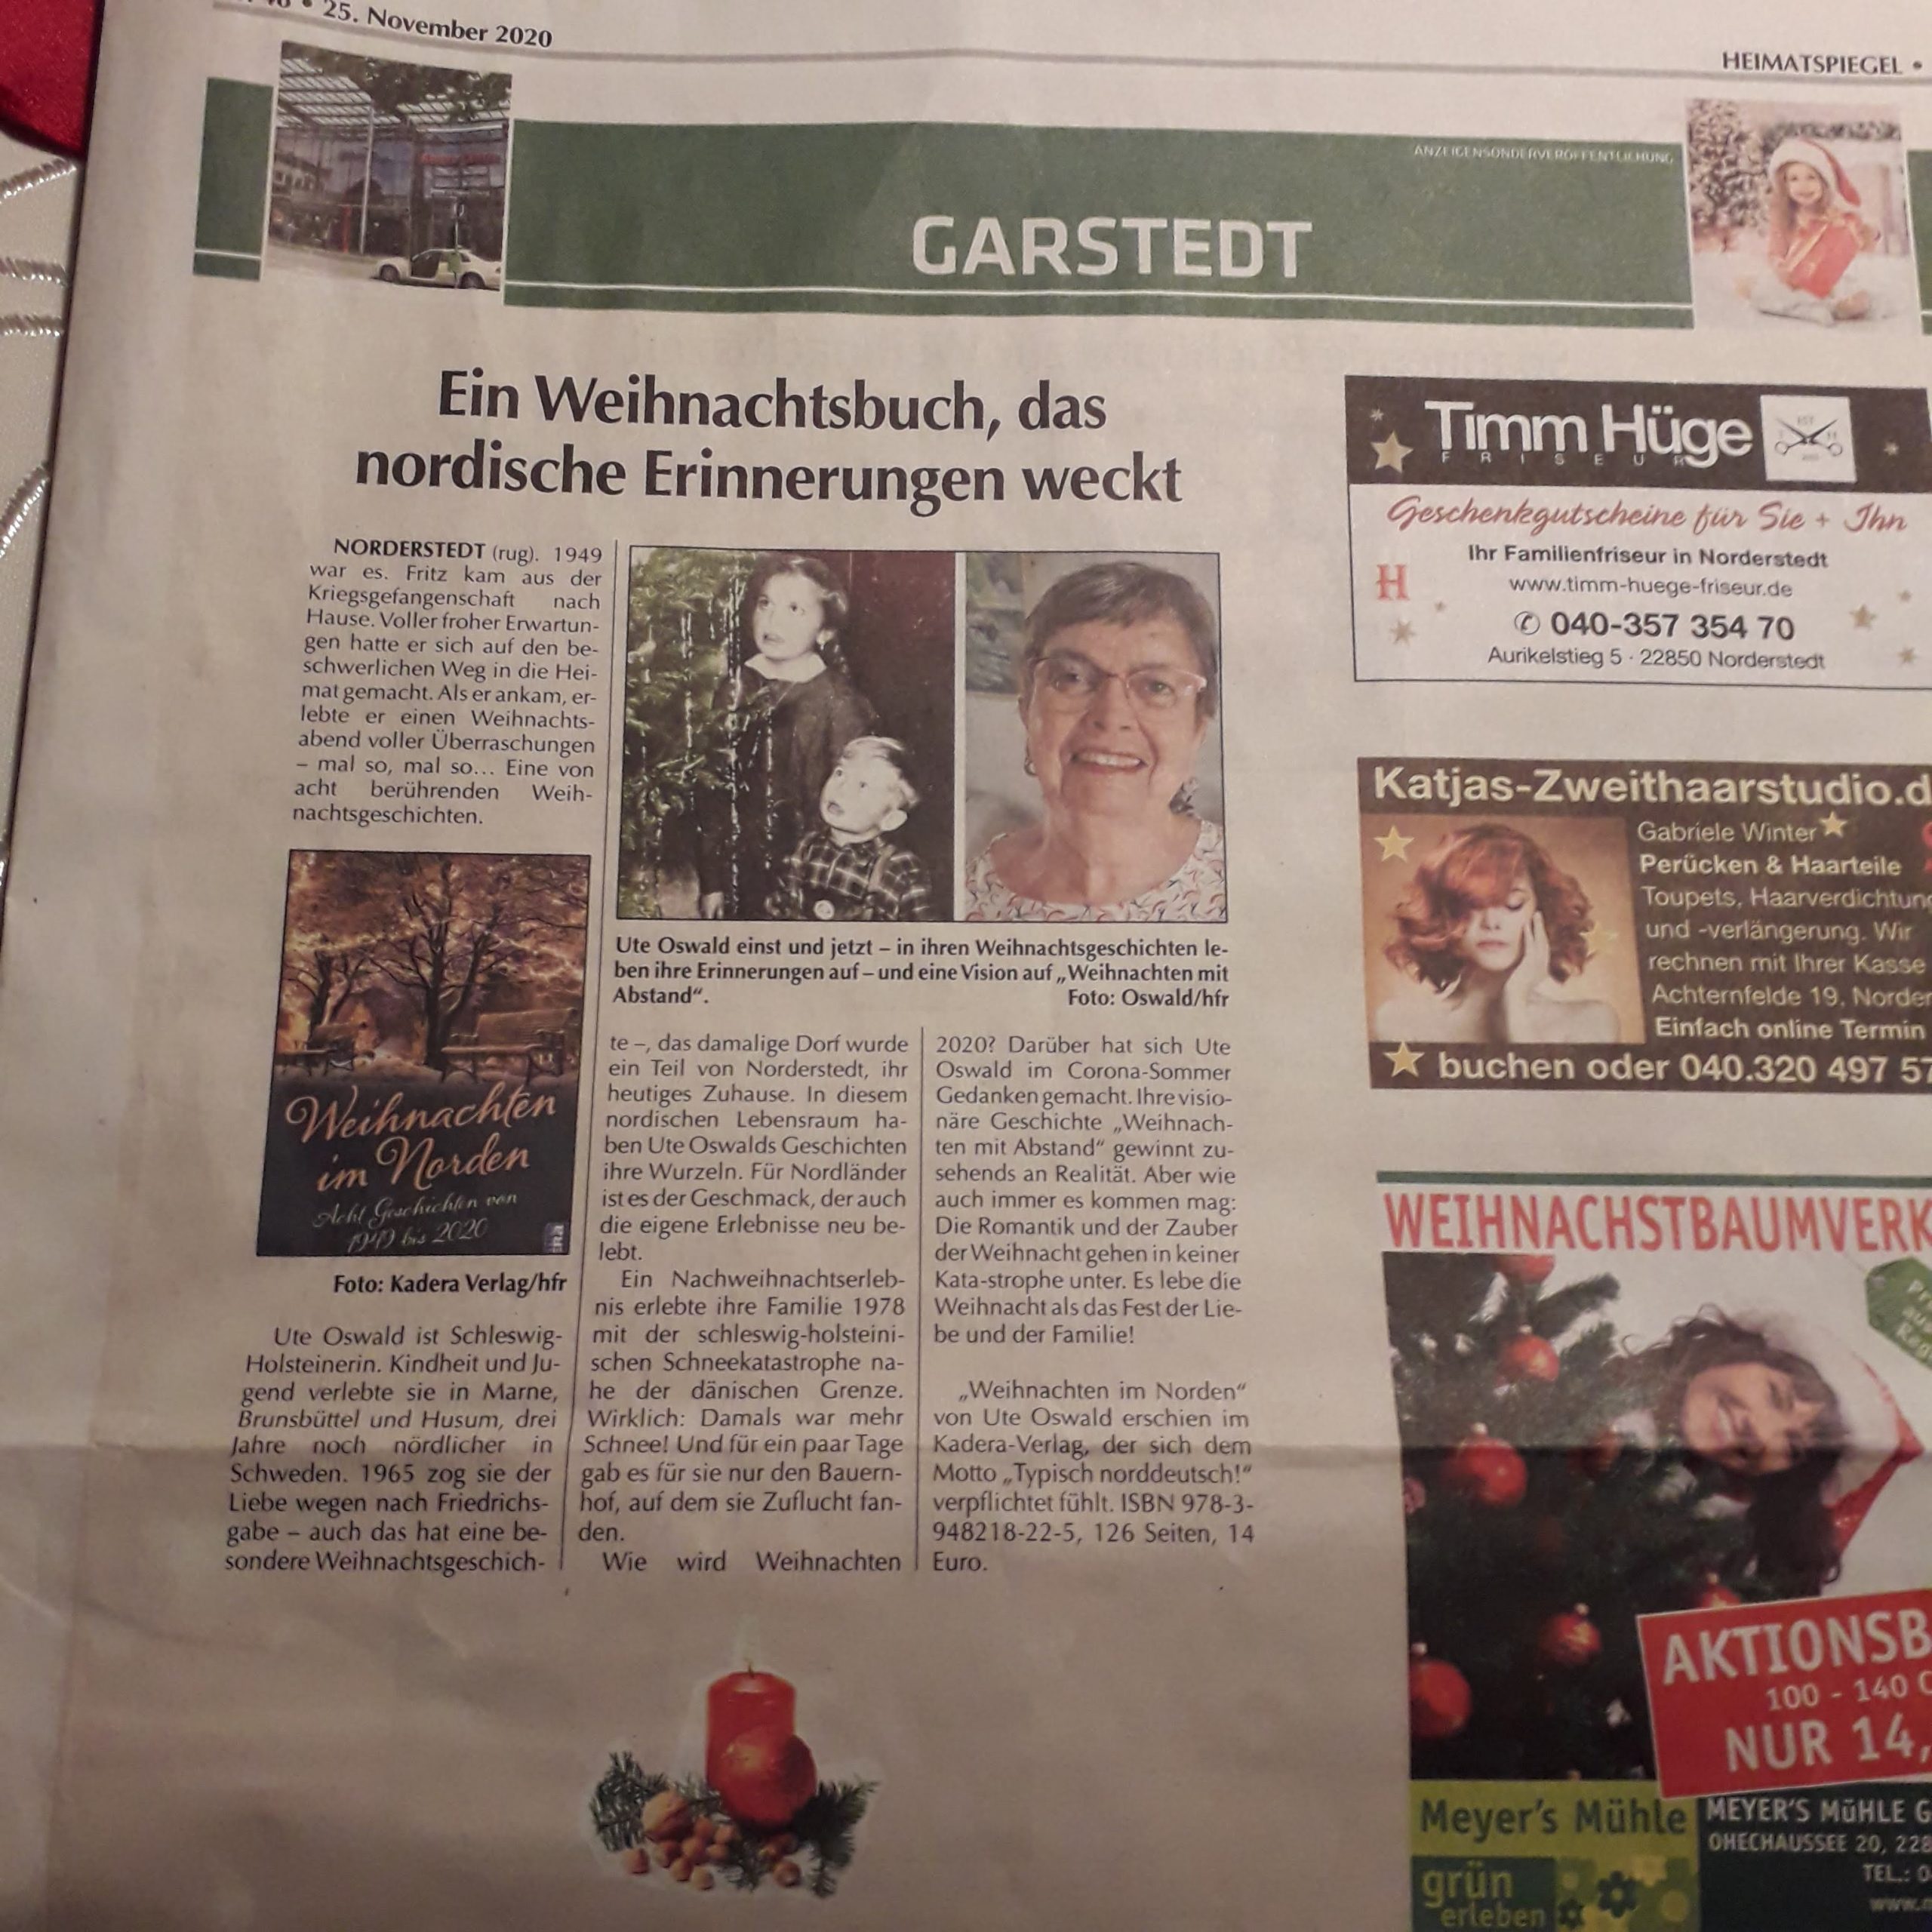 Zeitungsbericht "Weihnachten im Norden" von Ute Oswald im Heimatspiegel